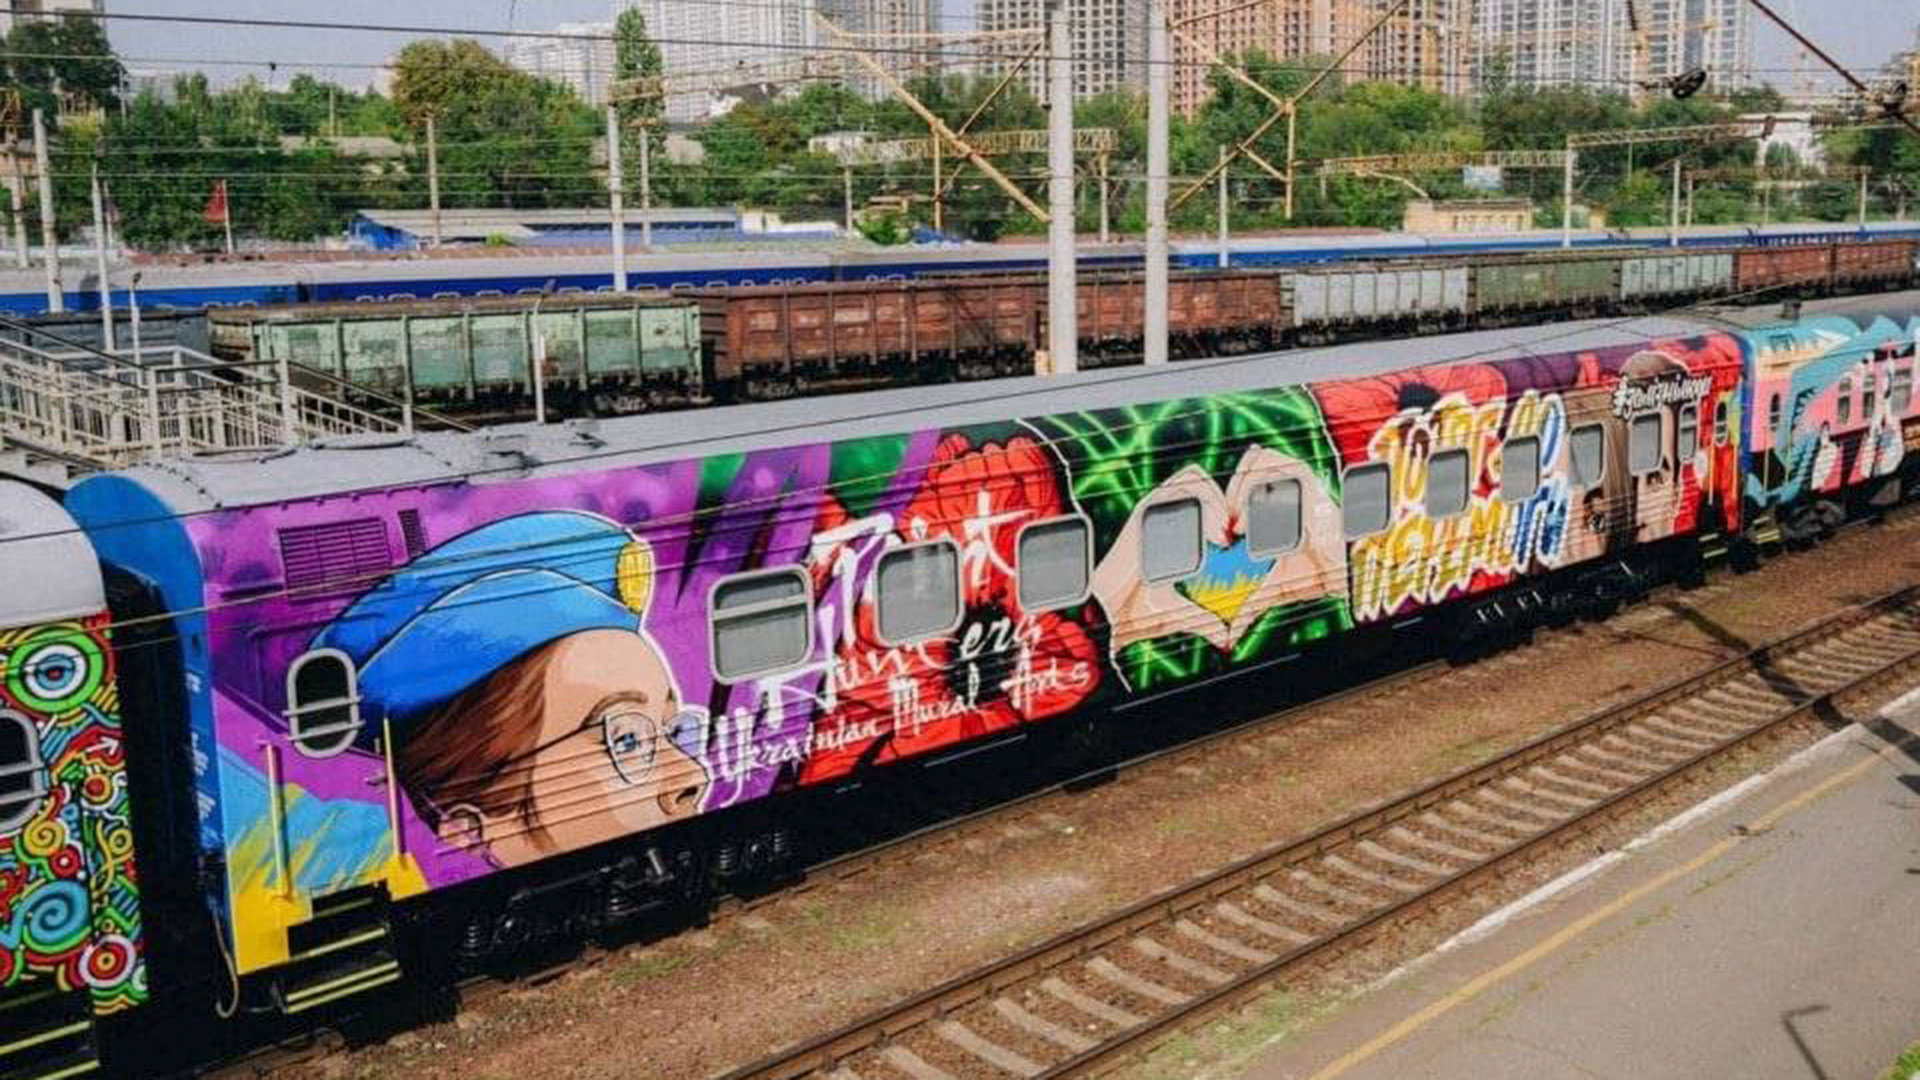 El tren se llama “Tren de la Victoria” y los vagones están pintados por artistas ucranianos, según informó el Ministerio de Defensa de Ucrania (Foto Ministerio de Defensa de Ucrania)